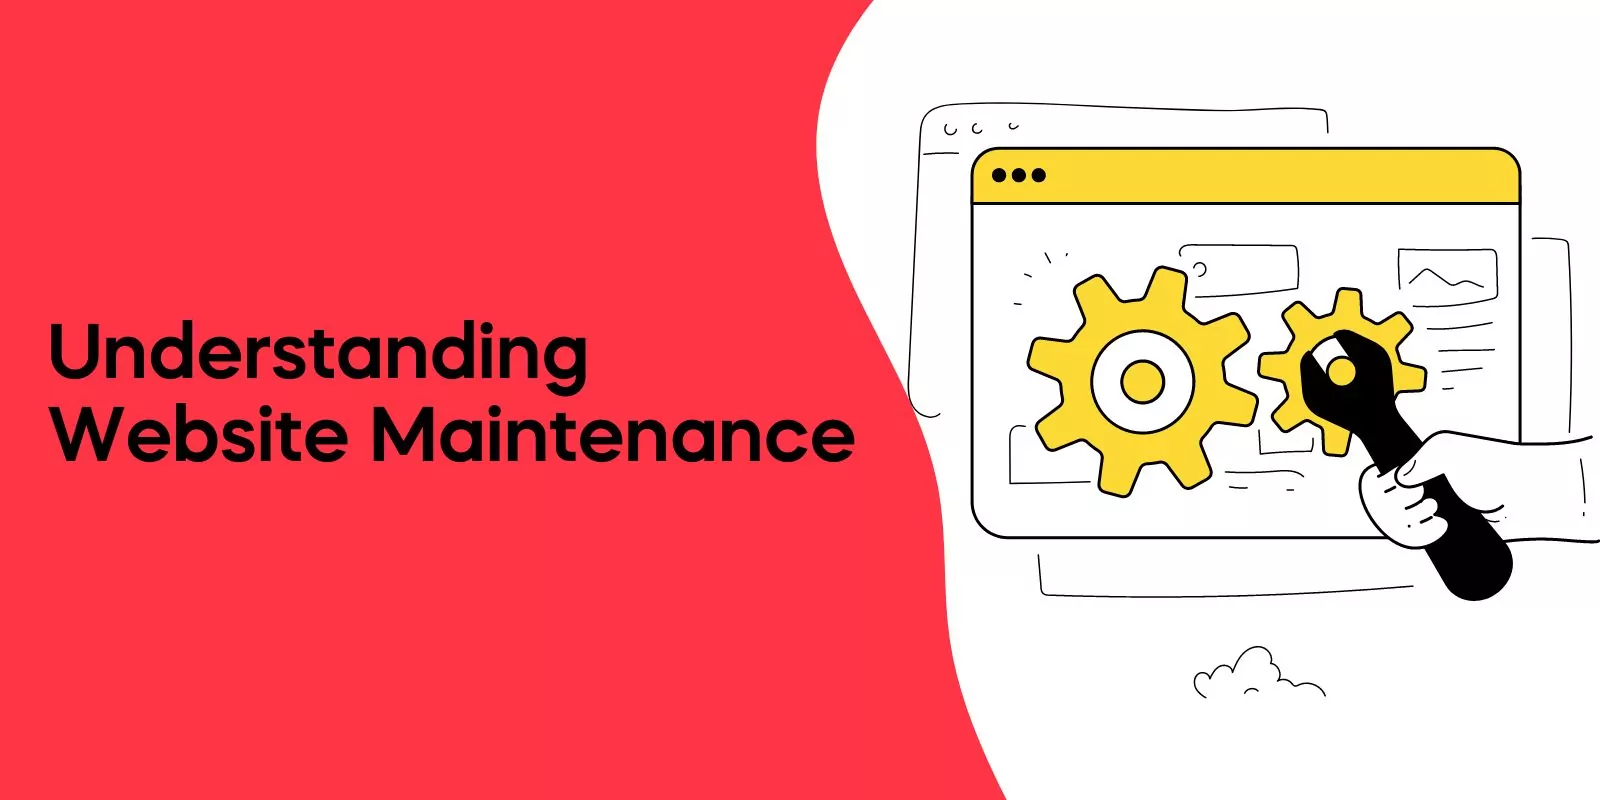 Understanding Websites Maintenance